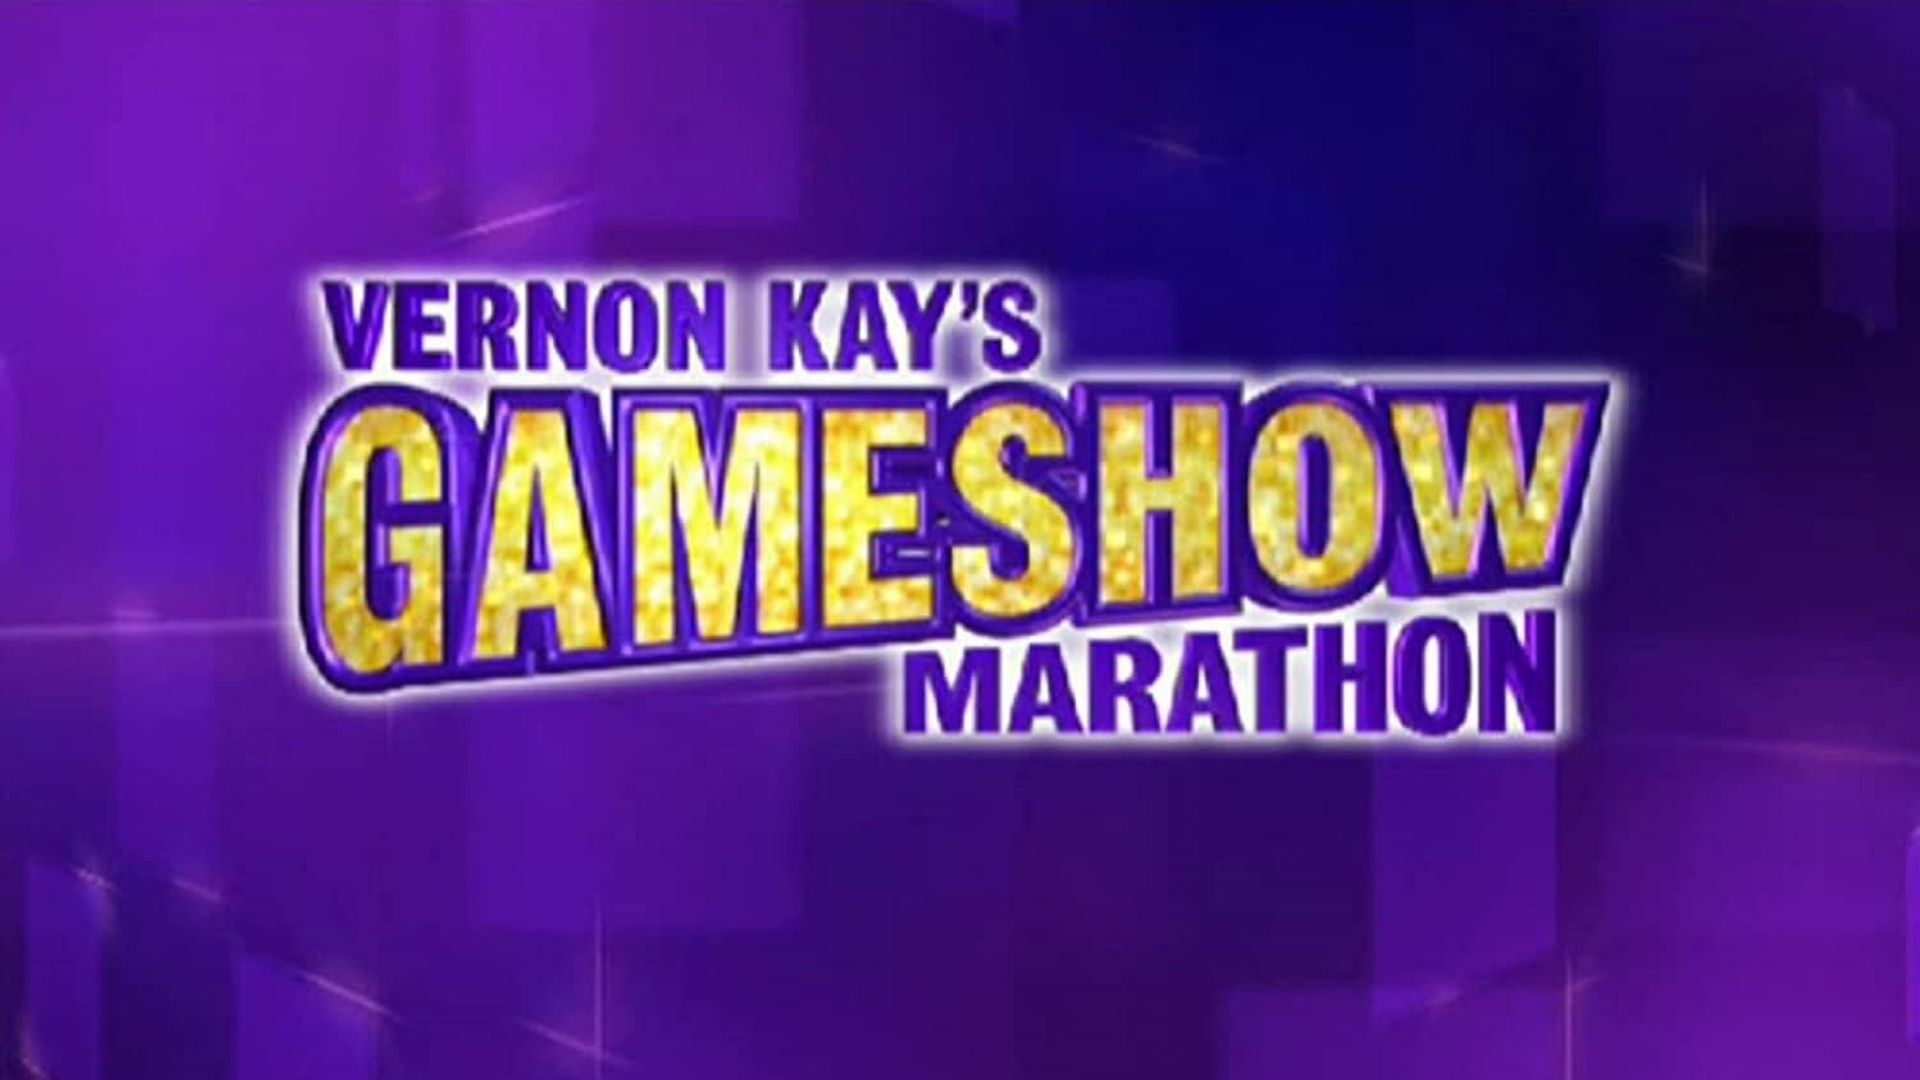 Gameshow Marathon background